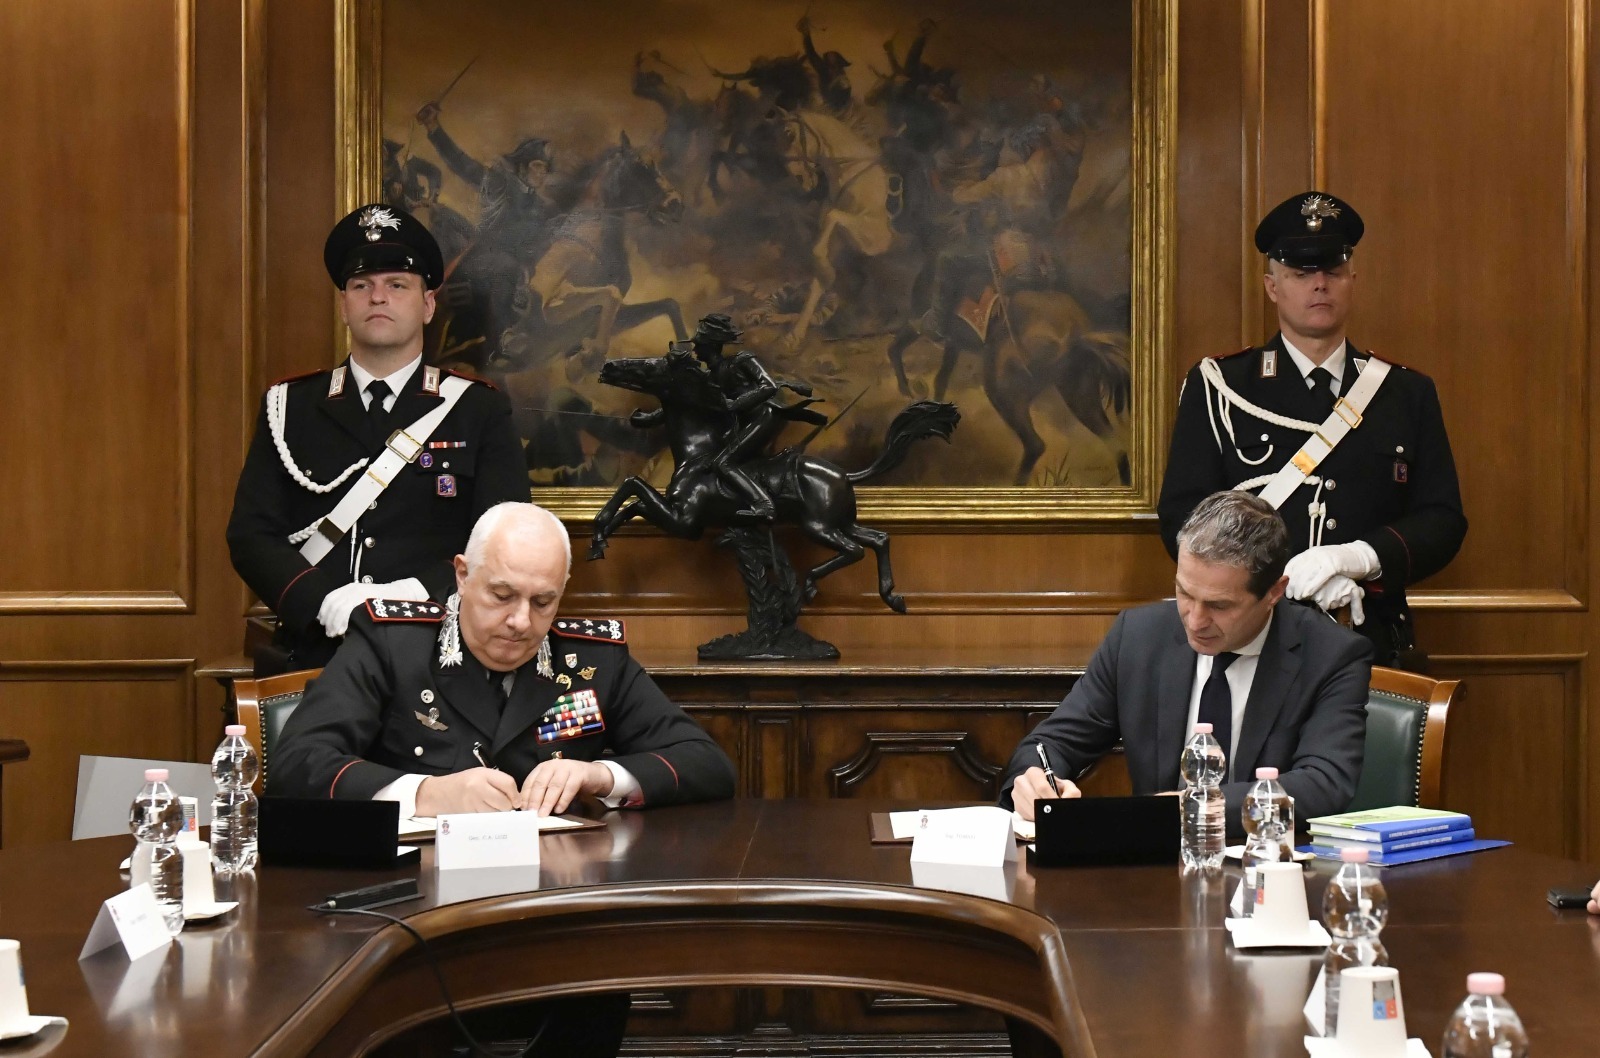 Arma dei Carabinieri e Autostrade per l’Italia insieme per promuovere la legalità nei cantieri